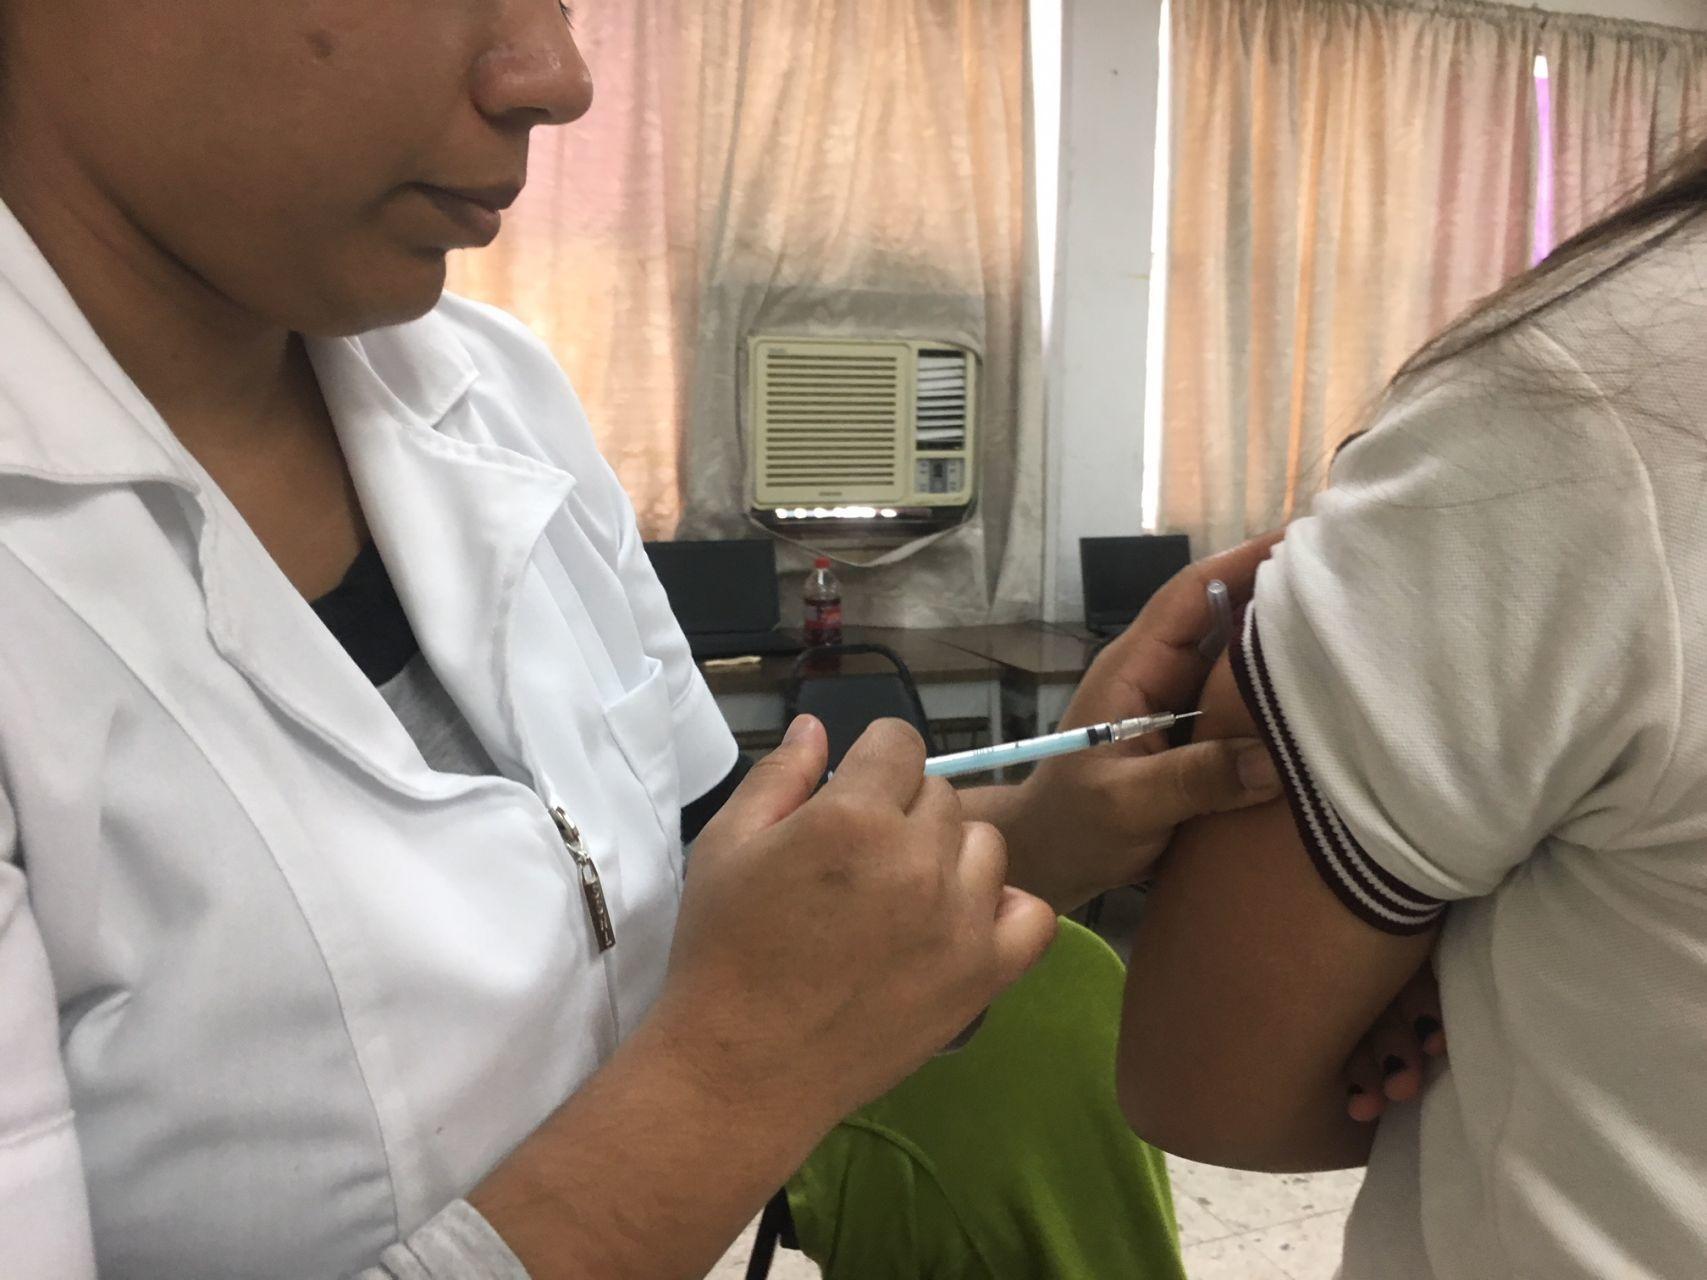 México pide a instituciones de salud estar alertas y notificar probables casos de hepatitis infantil grave; hay 228 casos en 20 países